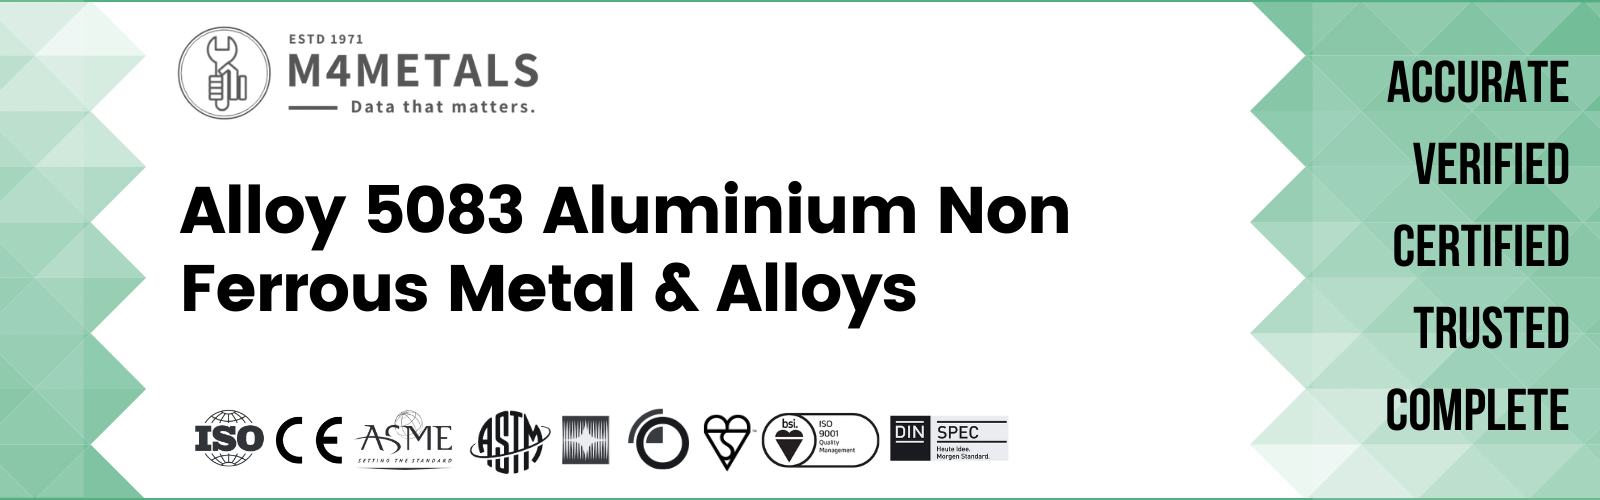 Aluminium Alloy 5083